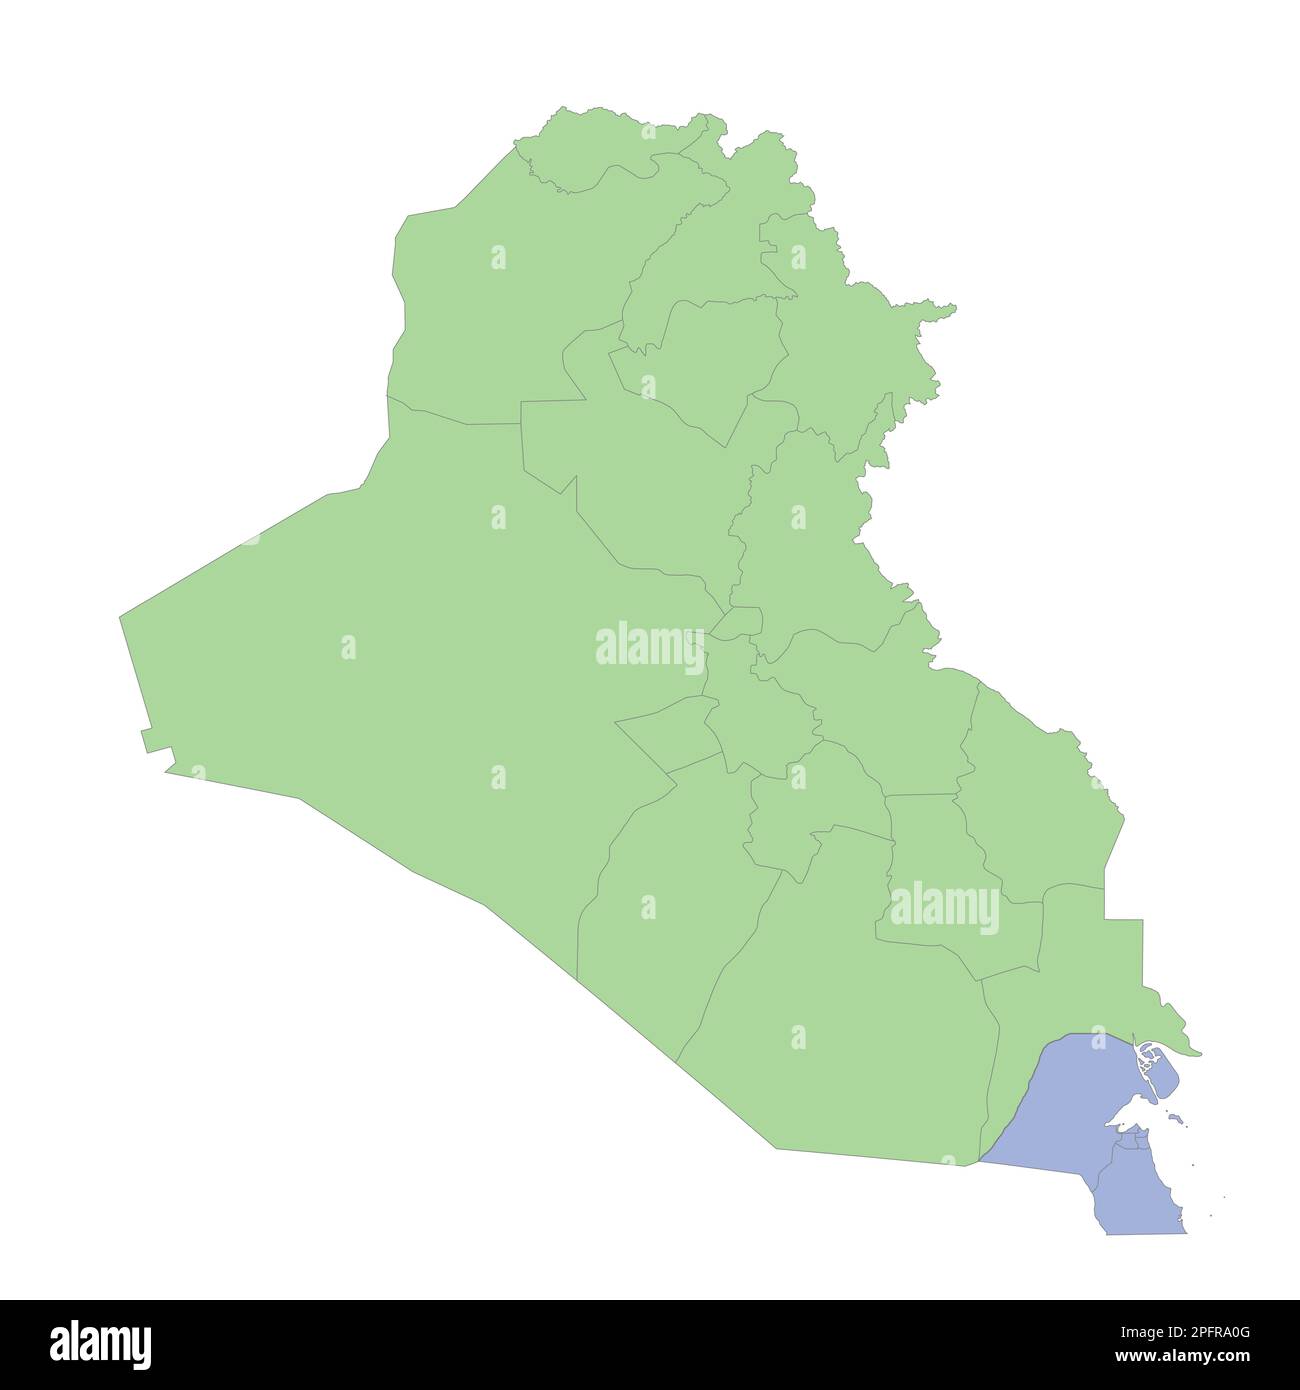 Mappa politica di alta qualità dell'Iraq e del Kuwait con i confini delle regioni o delle province. Illustrazione vettoriale Illustrazione Vettoriale